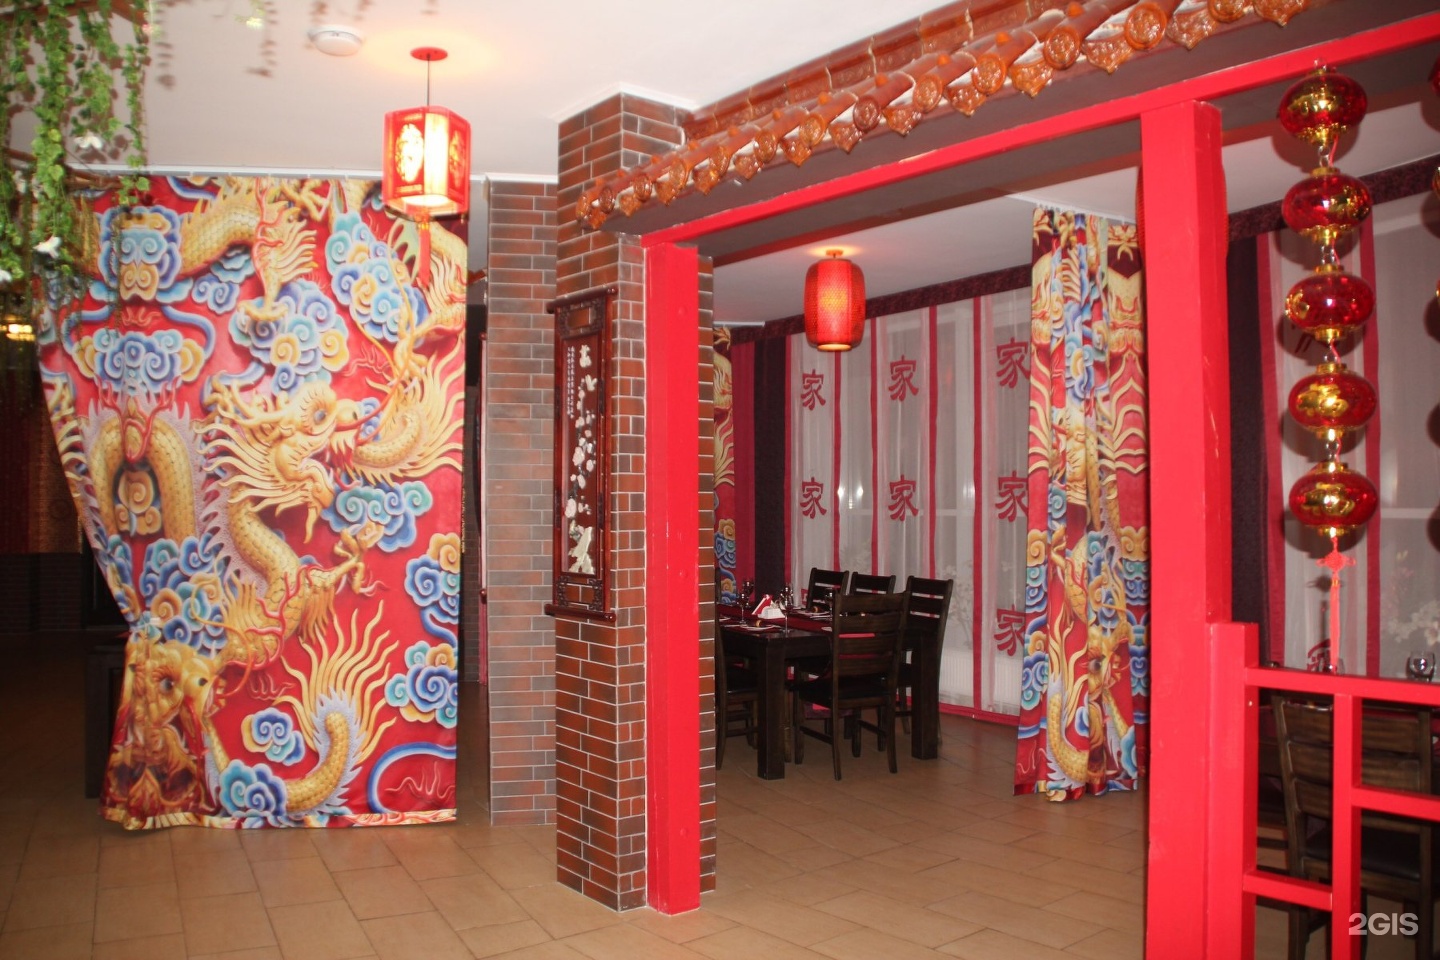 Китайское кафе. Китайский ресторан. Ресторан китайской кухни. Кафе в китайском стиле Москва.